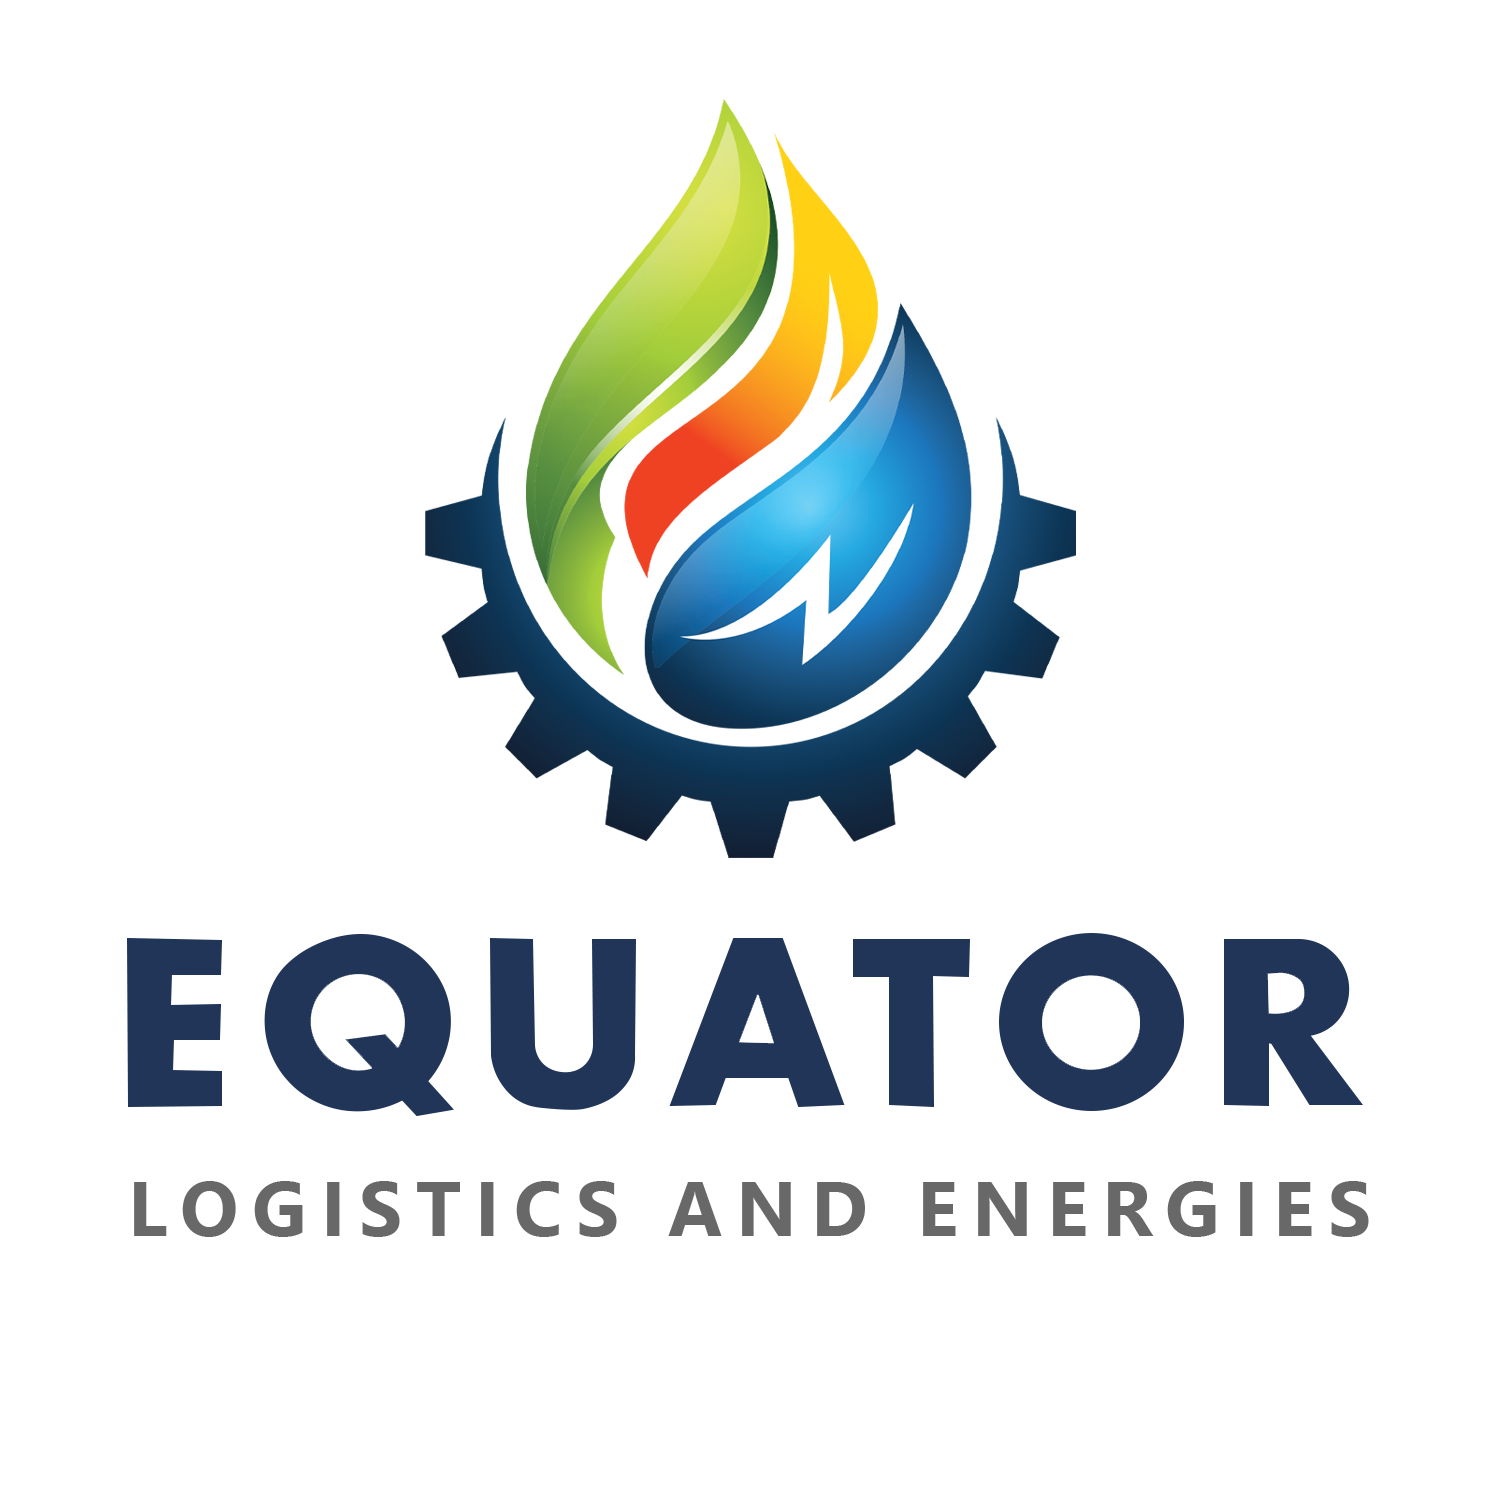 Equator Logistics and Energy